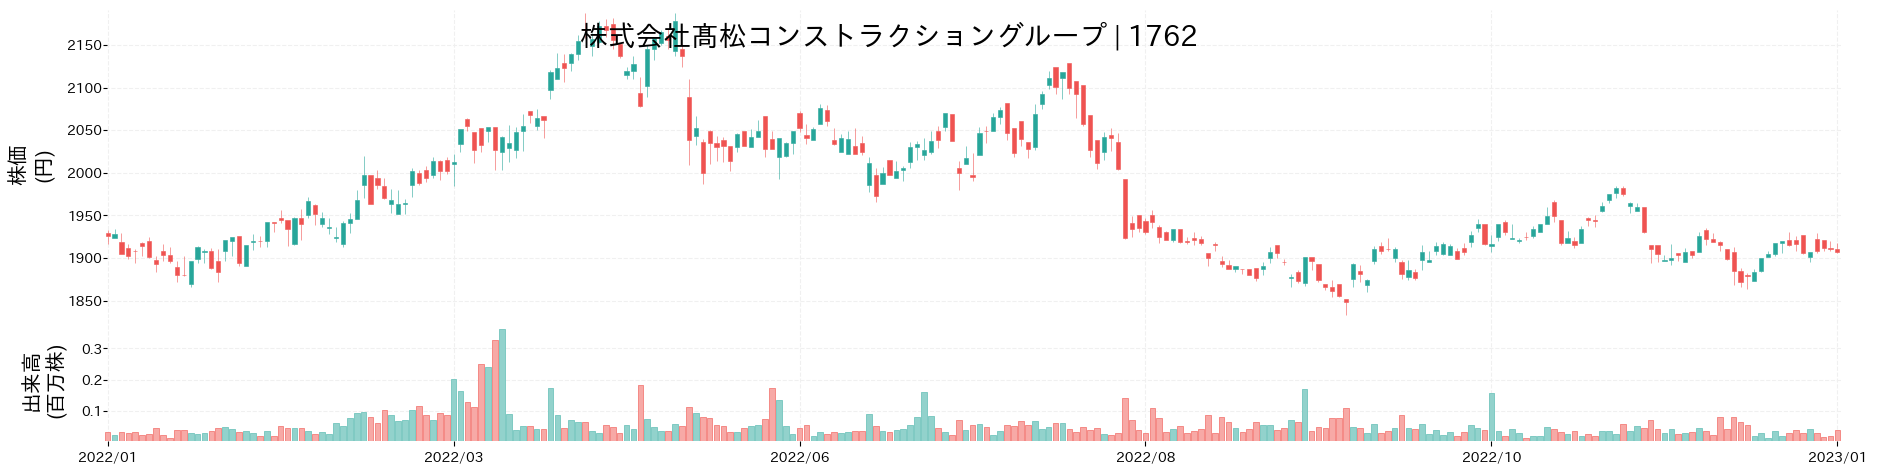 髙松コンストラクショングループの株価推移(2022)